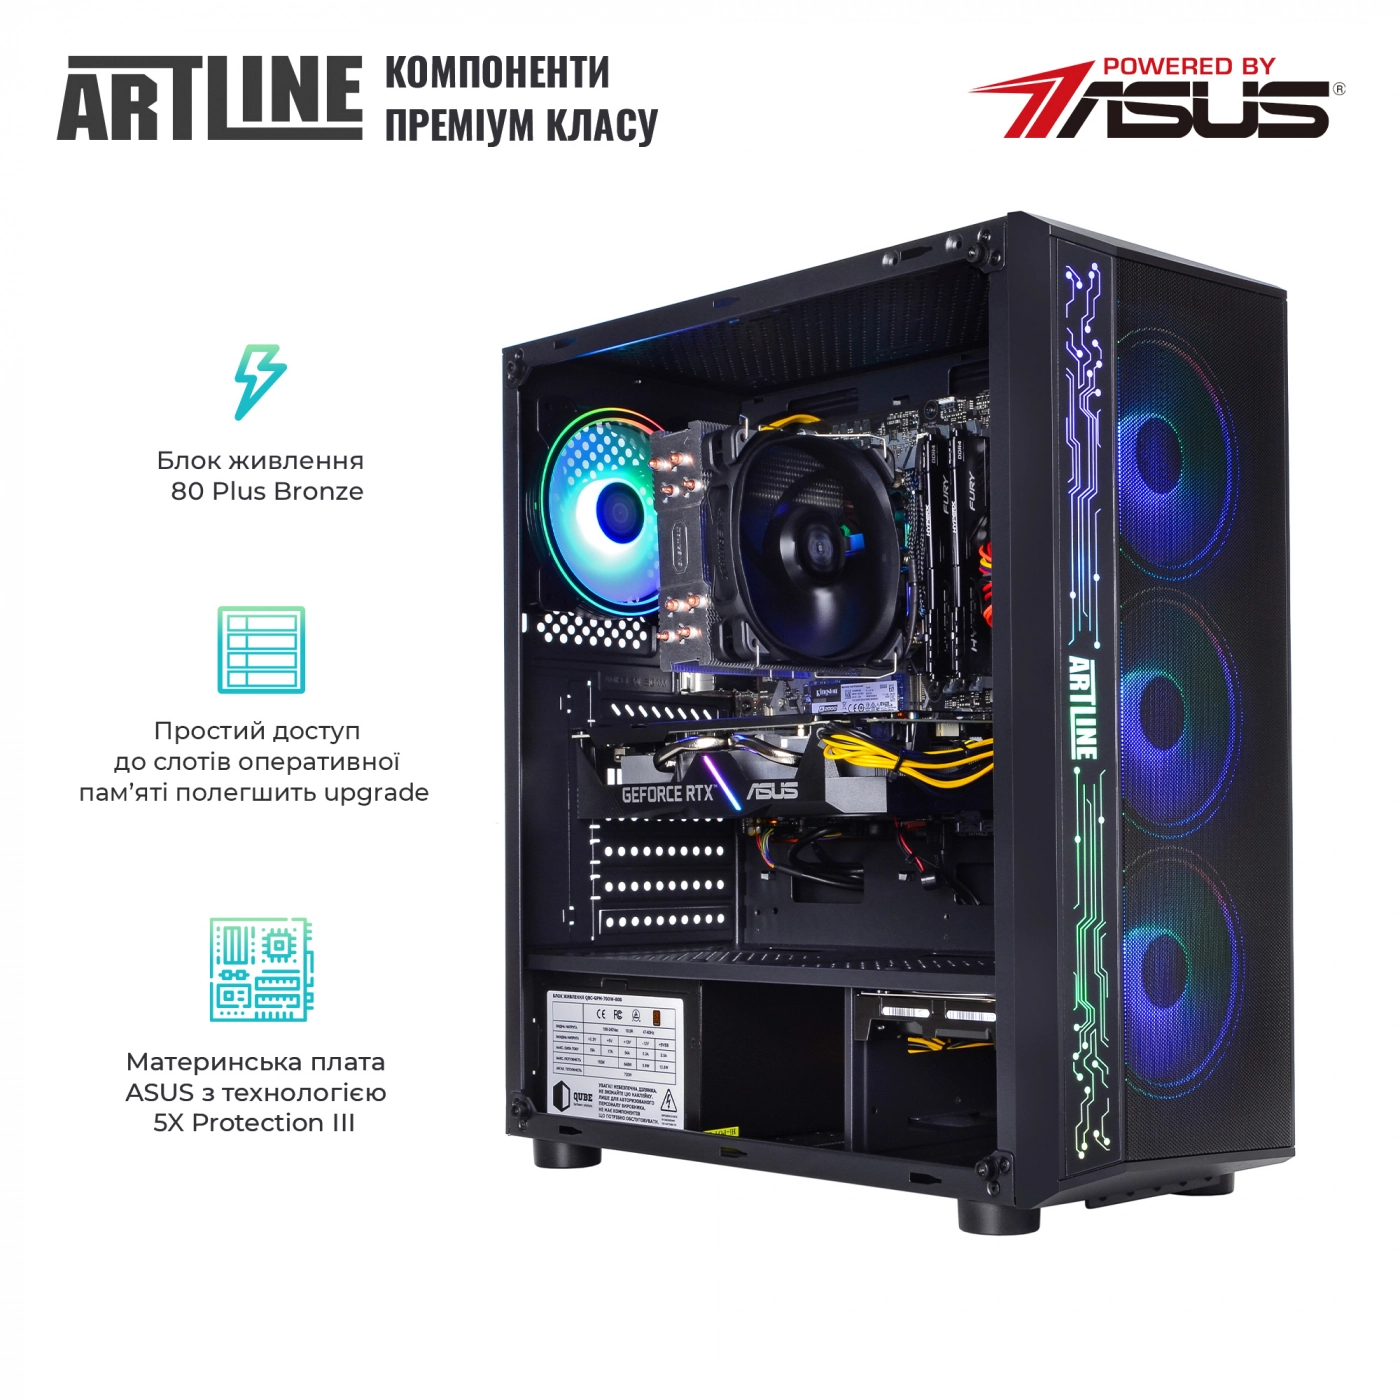 Купить Компьютер ARTLINE Gaming X53v28 - фото 2